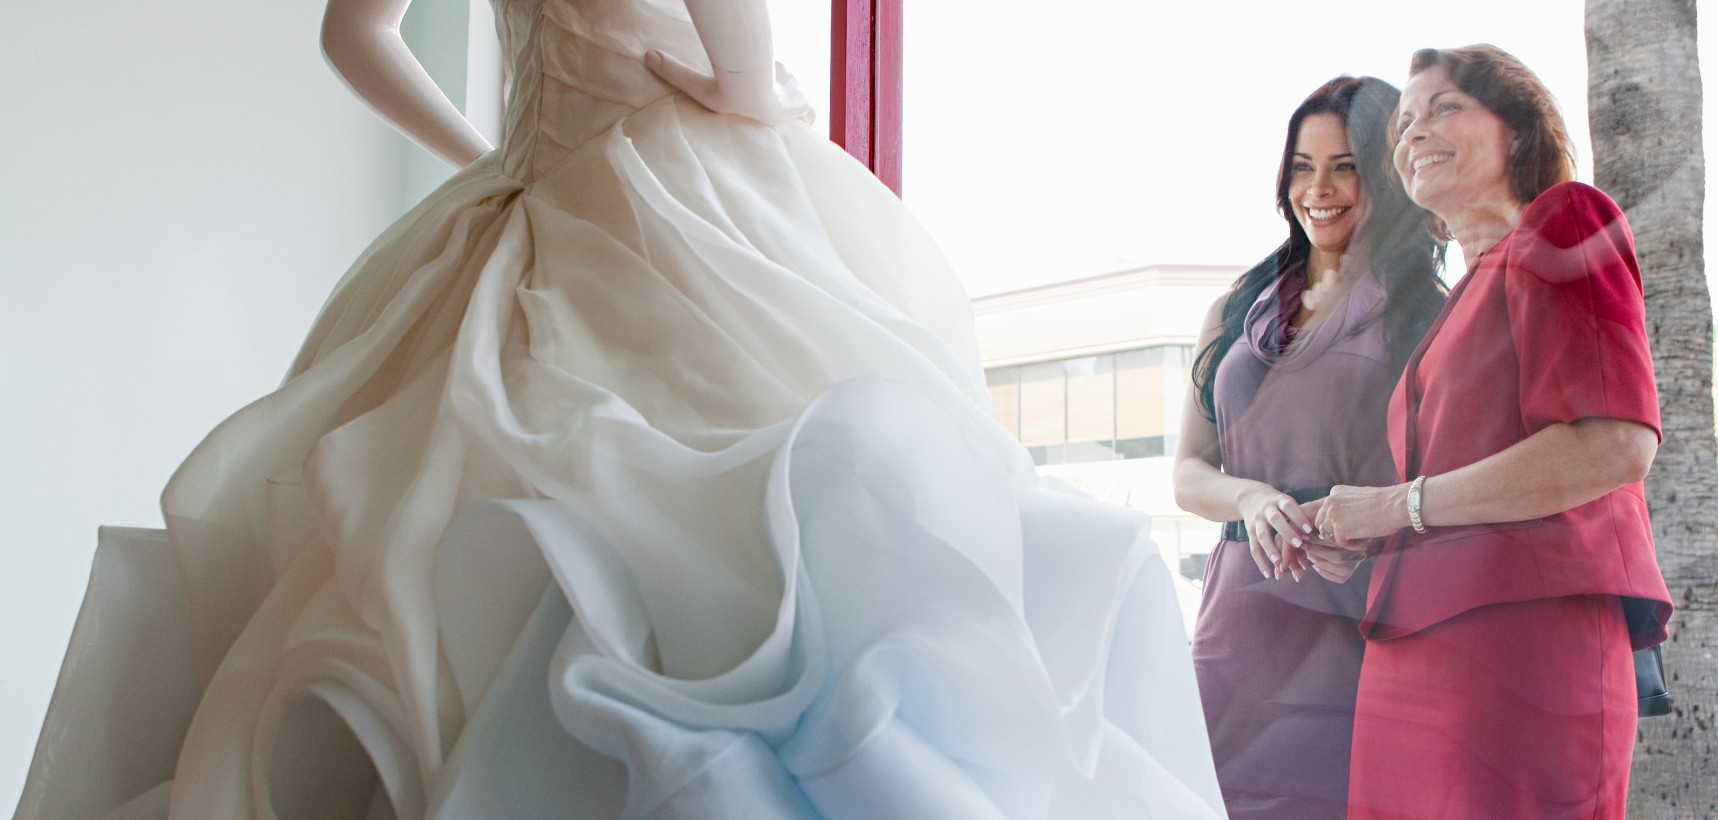 سعی کنید با یک همراه برای انتخاب لباس عروستان بروید